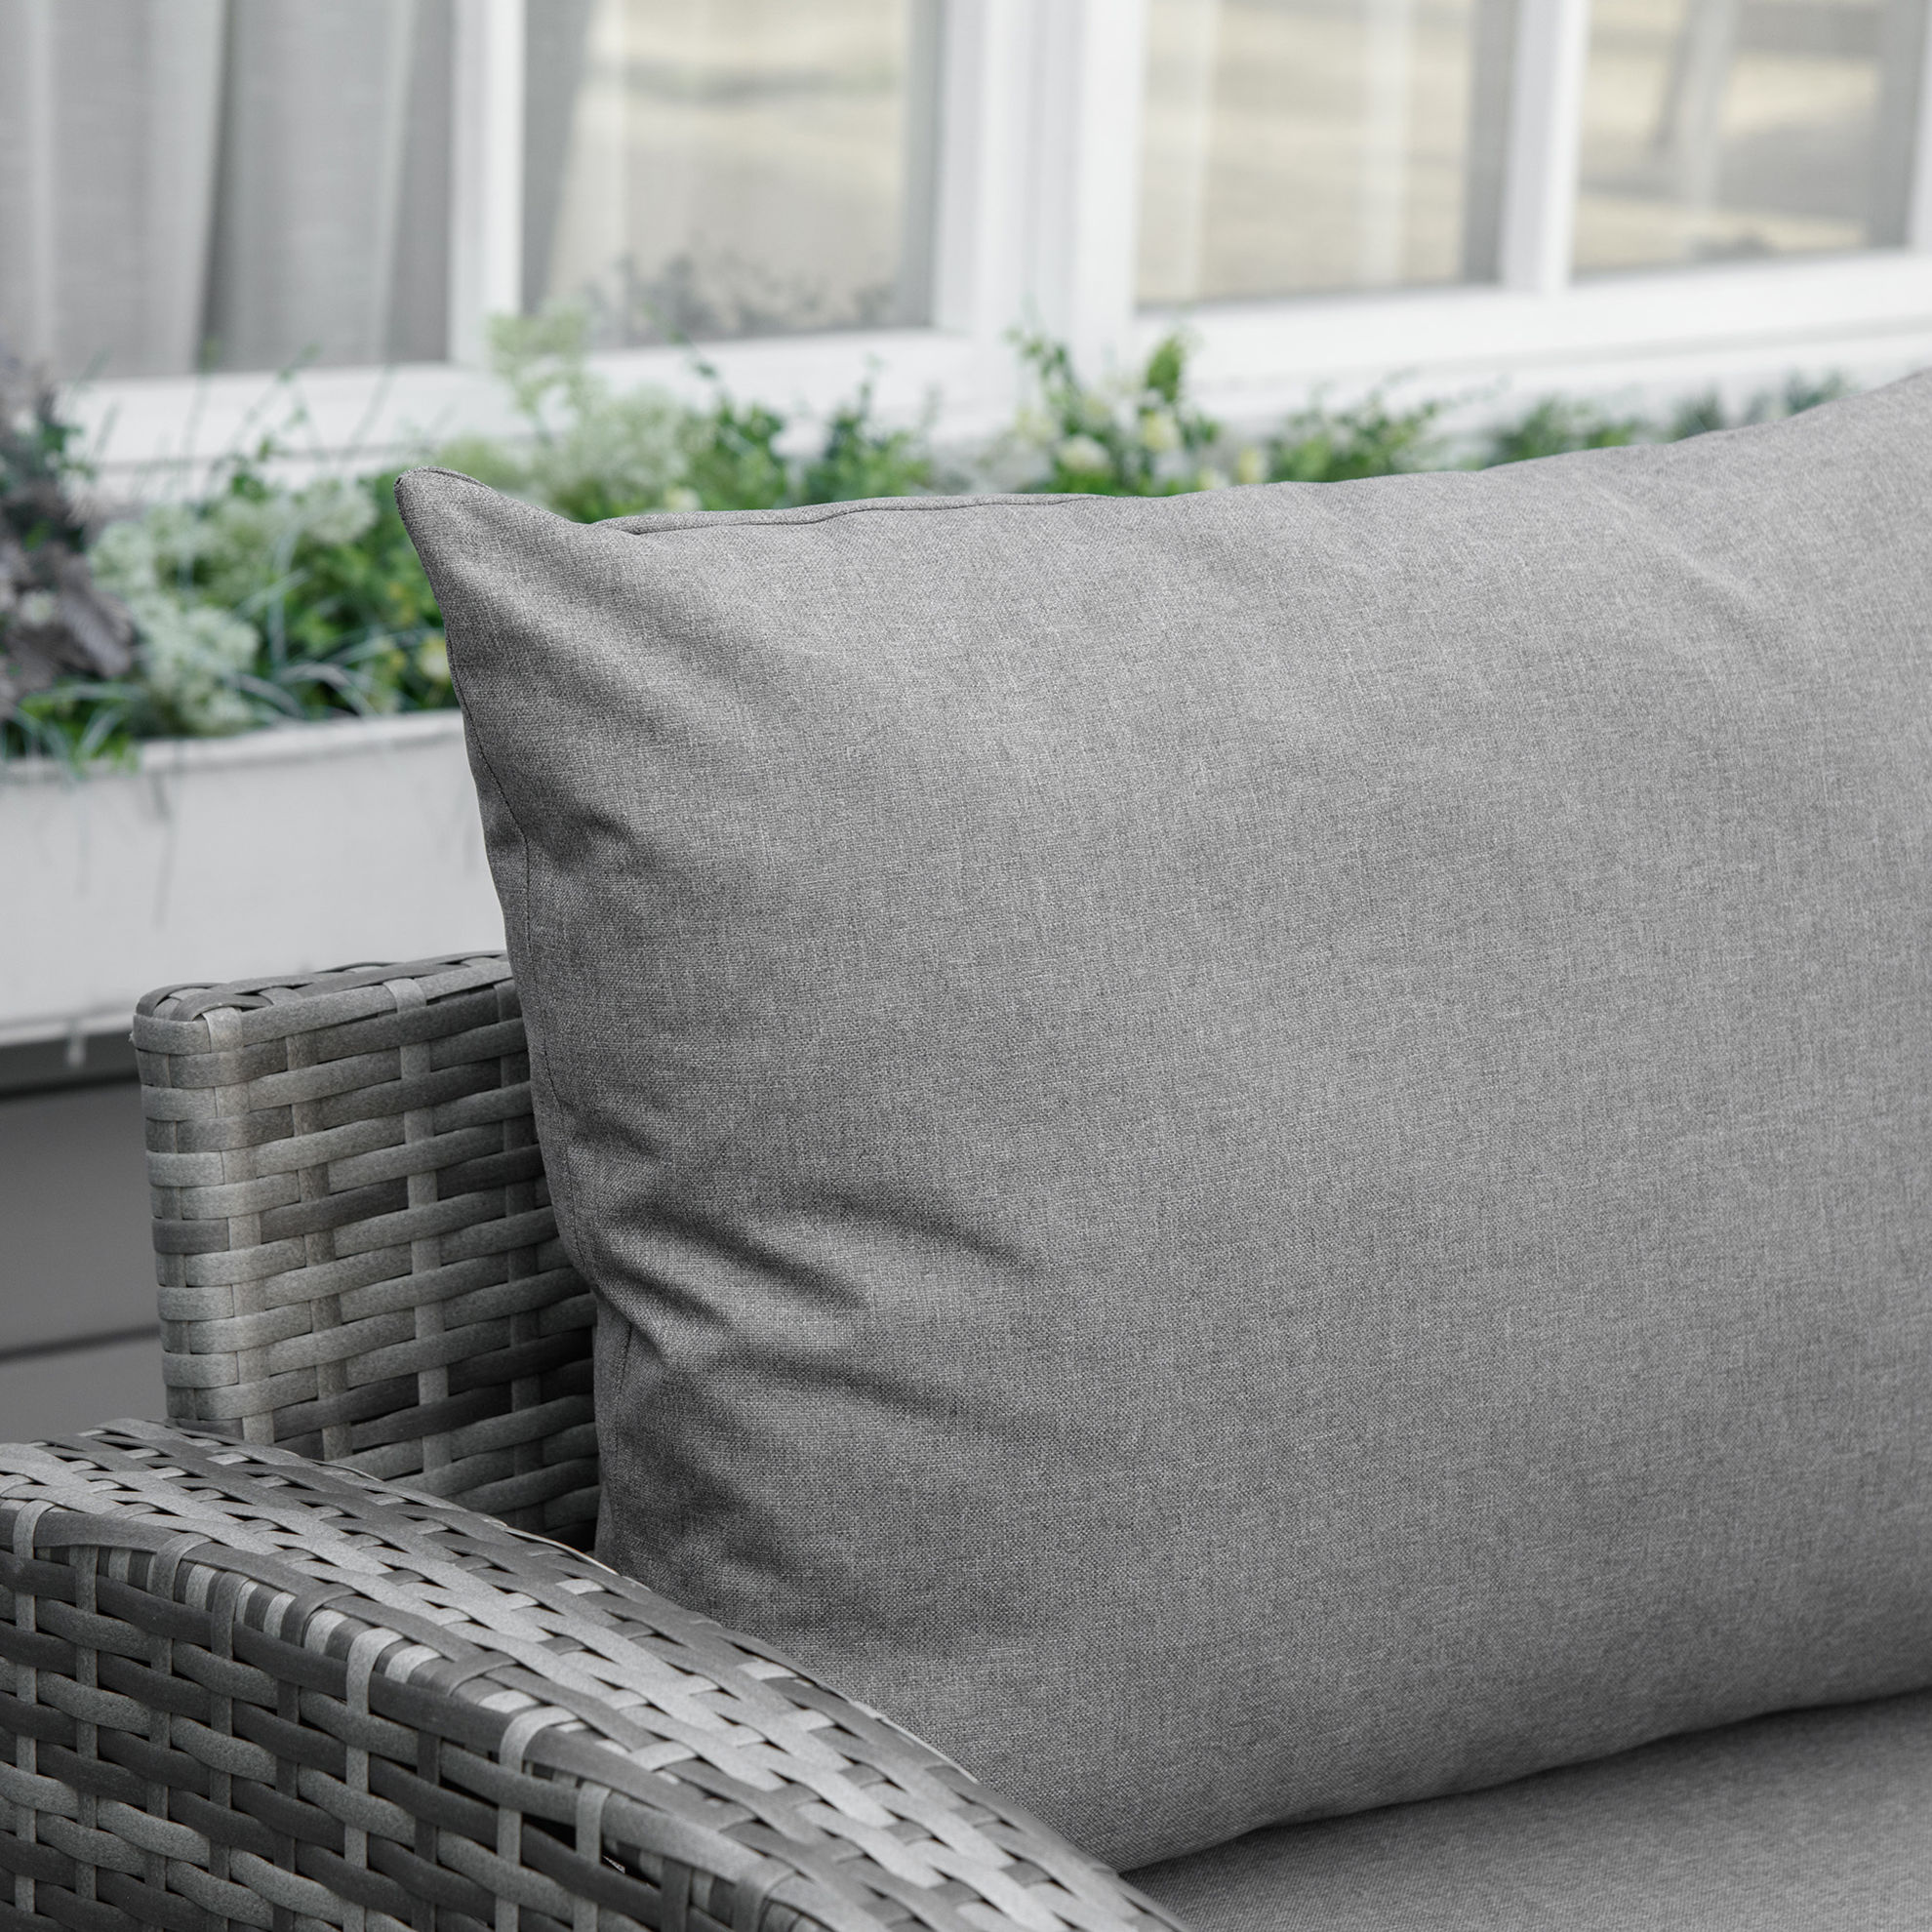 Gartenmöbel Set mit Hocker grau Farbe: grau | Weltbild.de